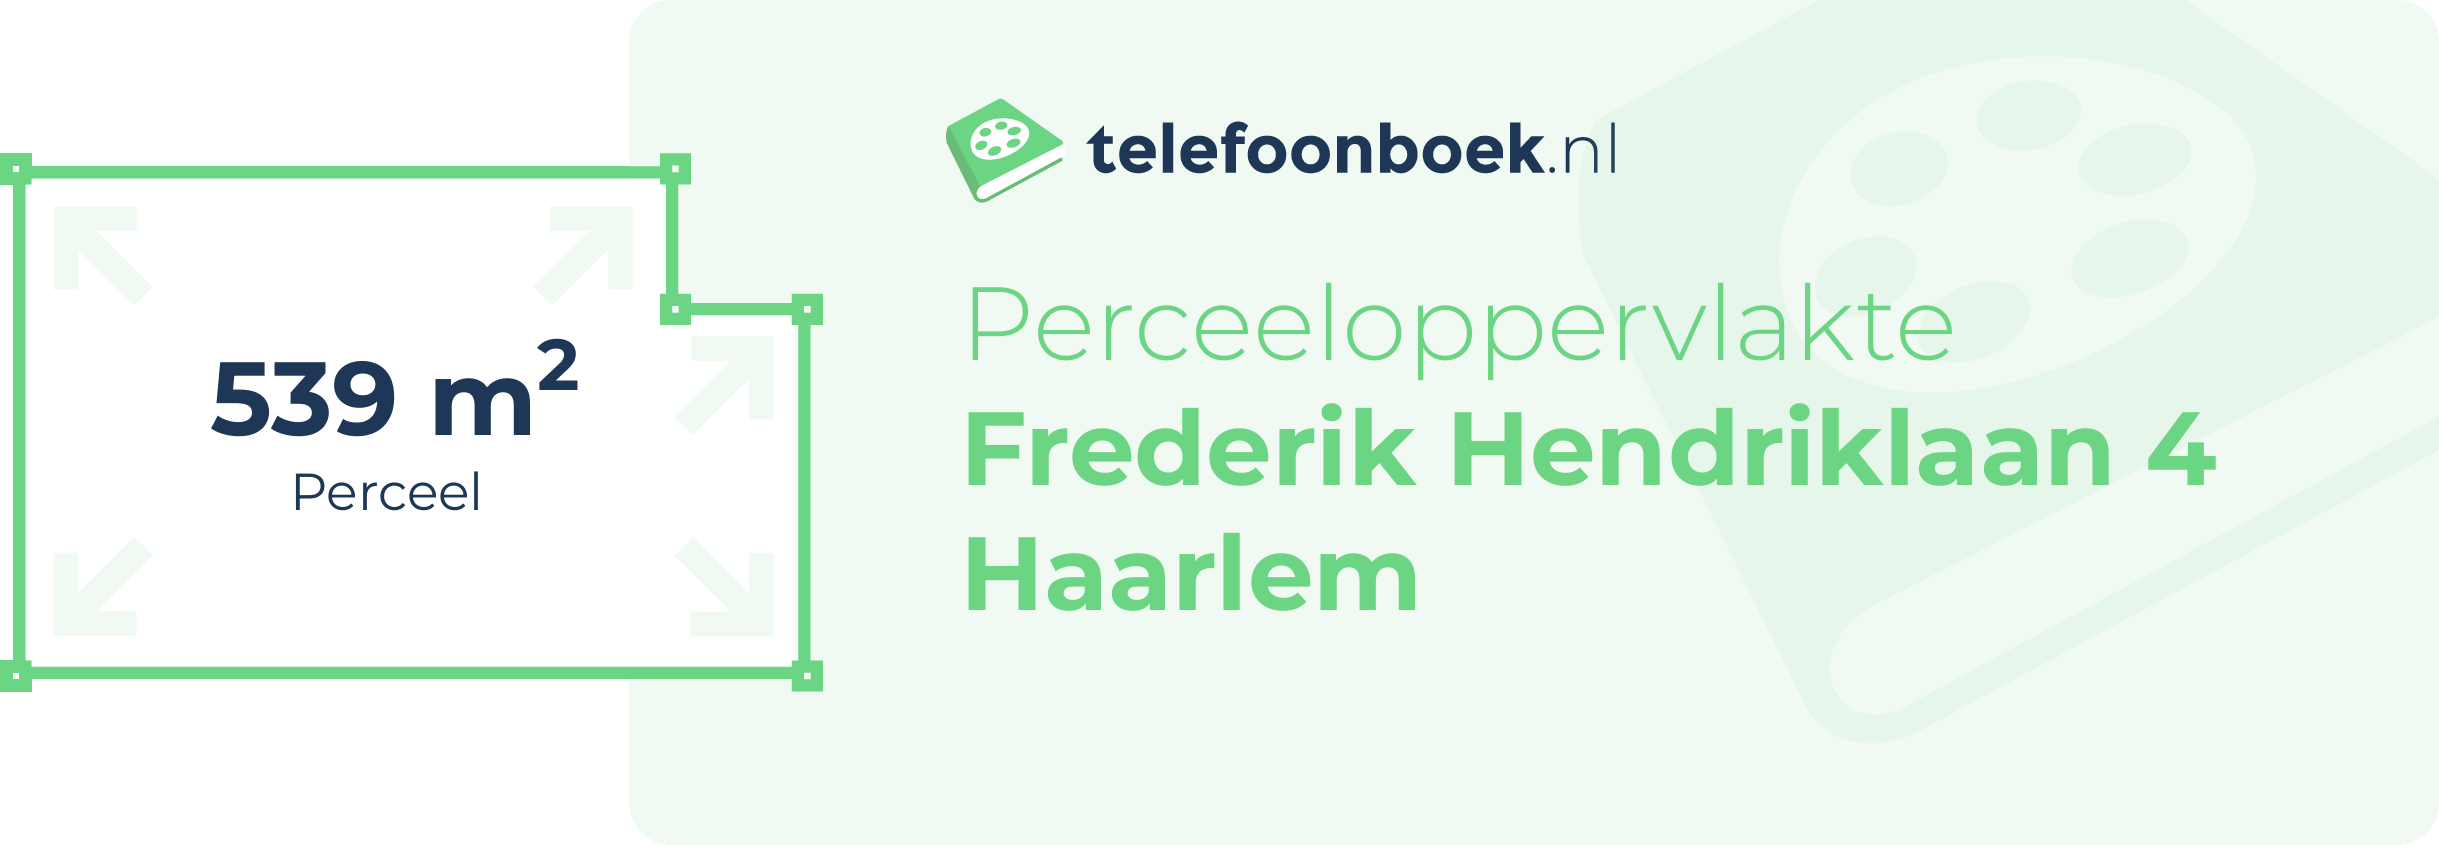 Perceeloppervlakte Frederik Hendriklaan 4 Haarlem